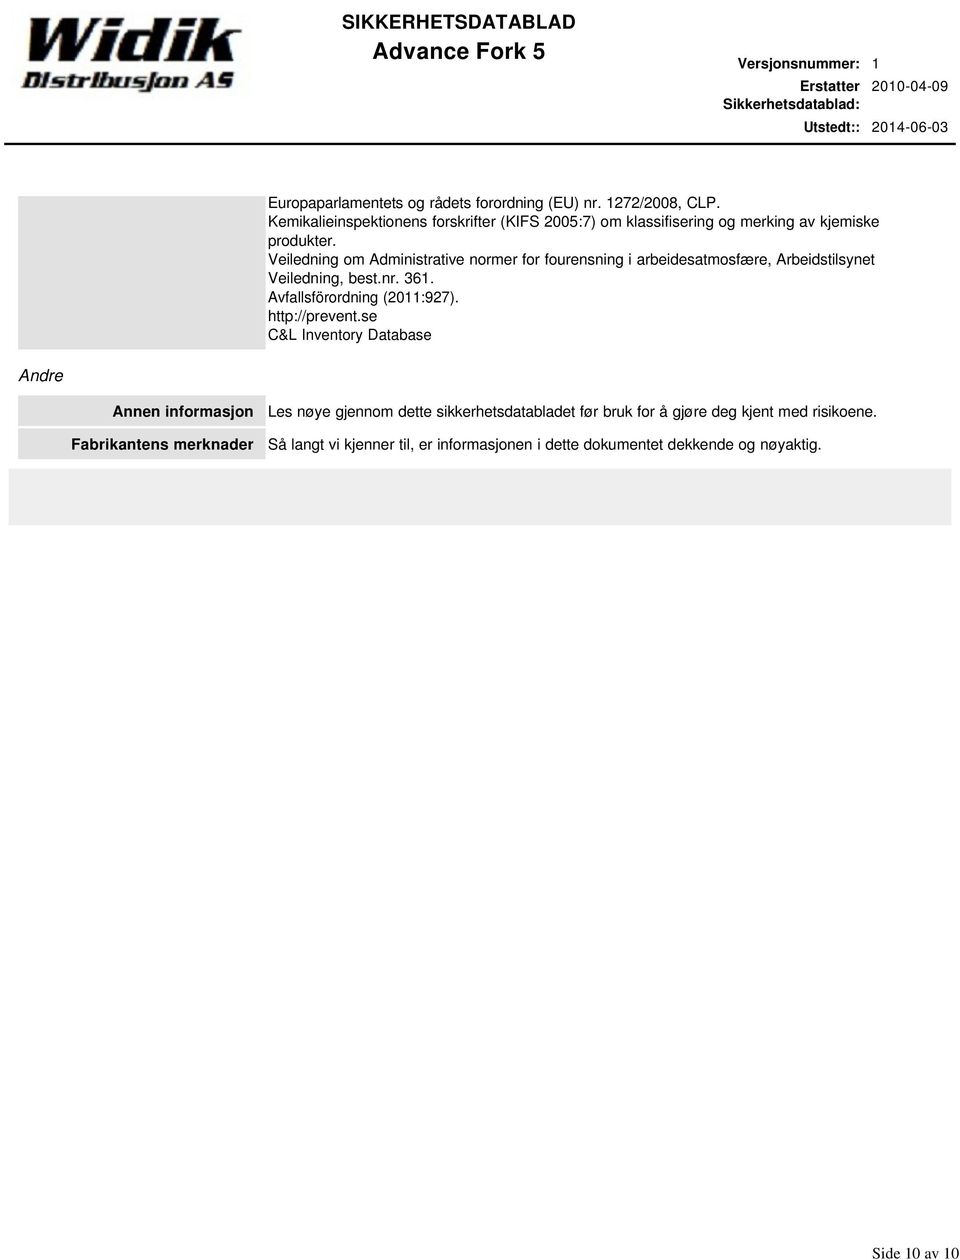 Veiledning om Administrative normer for fourensning i arbeidesatmosfære, Arbeidstilsynet Veiledning, best.nr. 361. Avfallsförordning (2011:927).